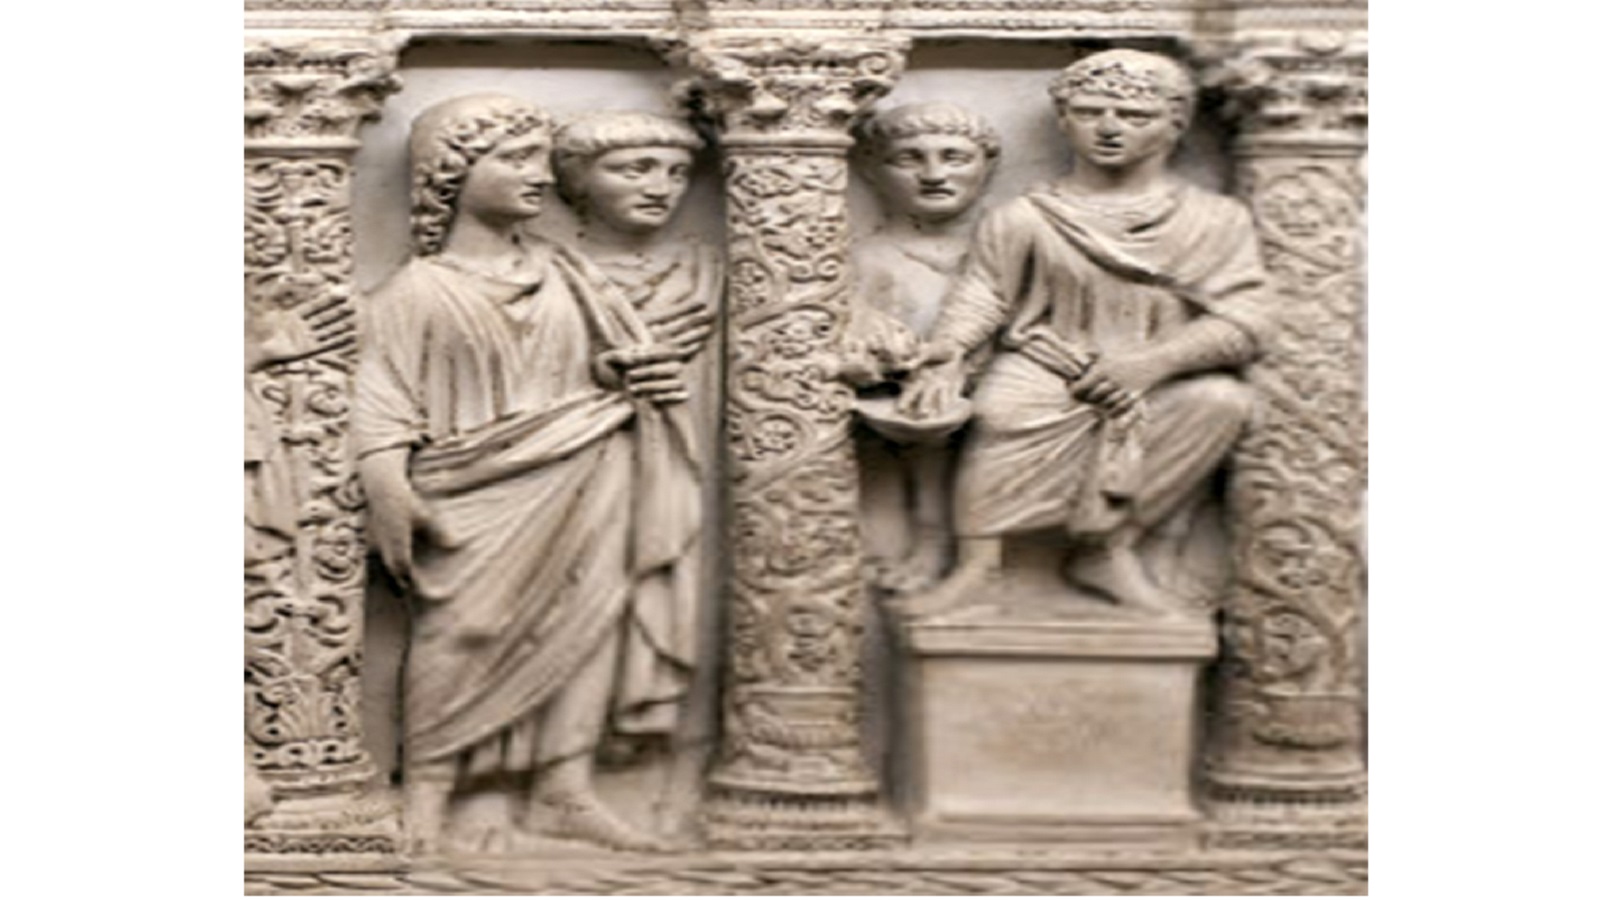  محاكمة يسوع، تفصيل من ناووس من نهاية القرن الرابع يُعرف باسم "تسليم الناموس"، من محفوظات الفاتيكان.